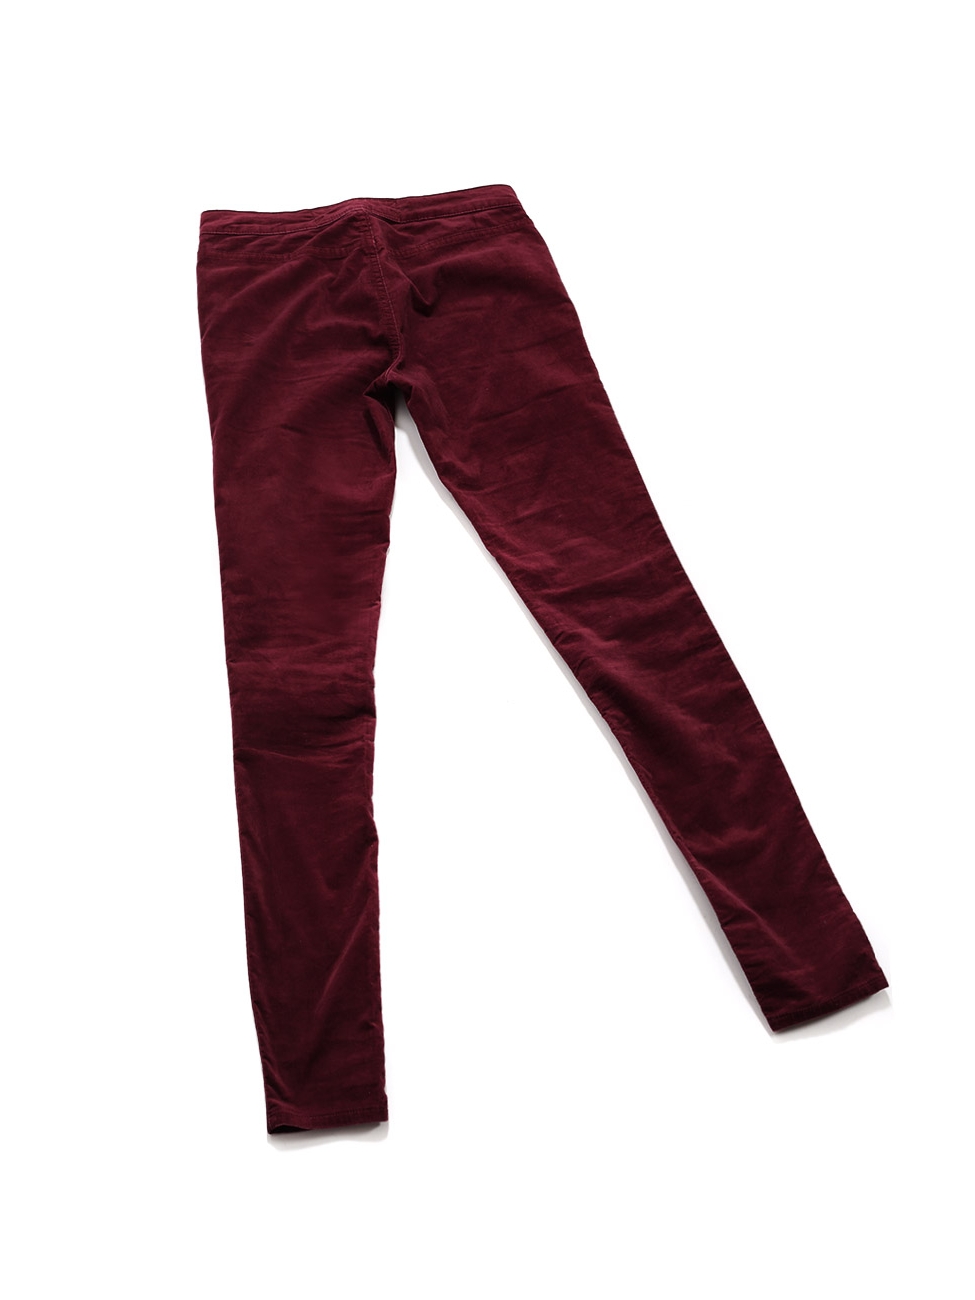 ASOS DESIGN super skinny trousers in burgundy velvet  ASOS